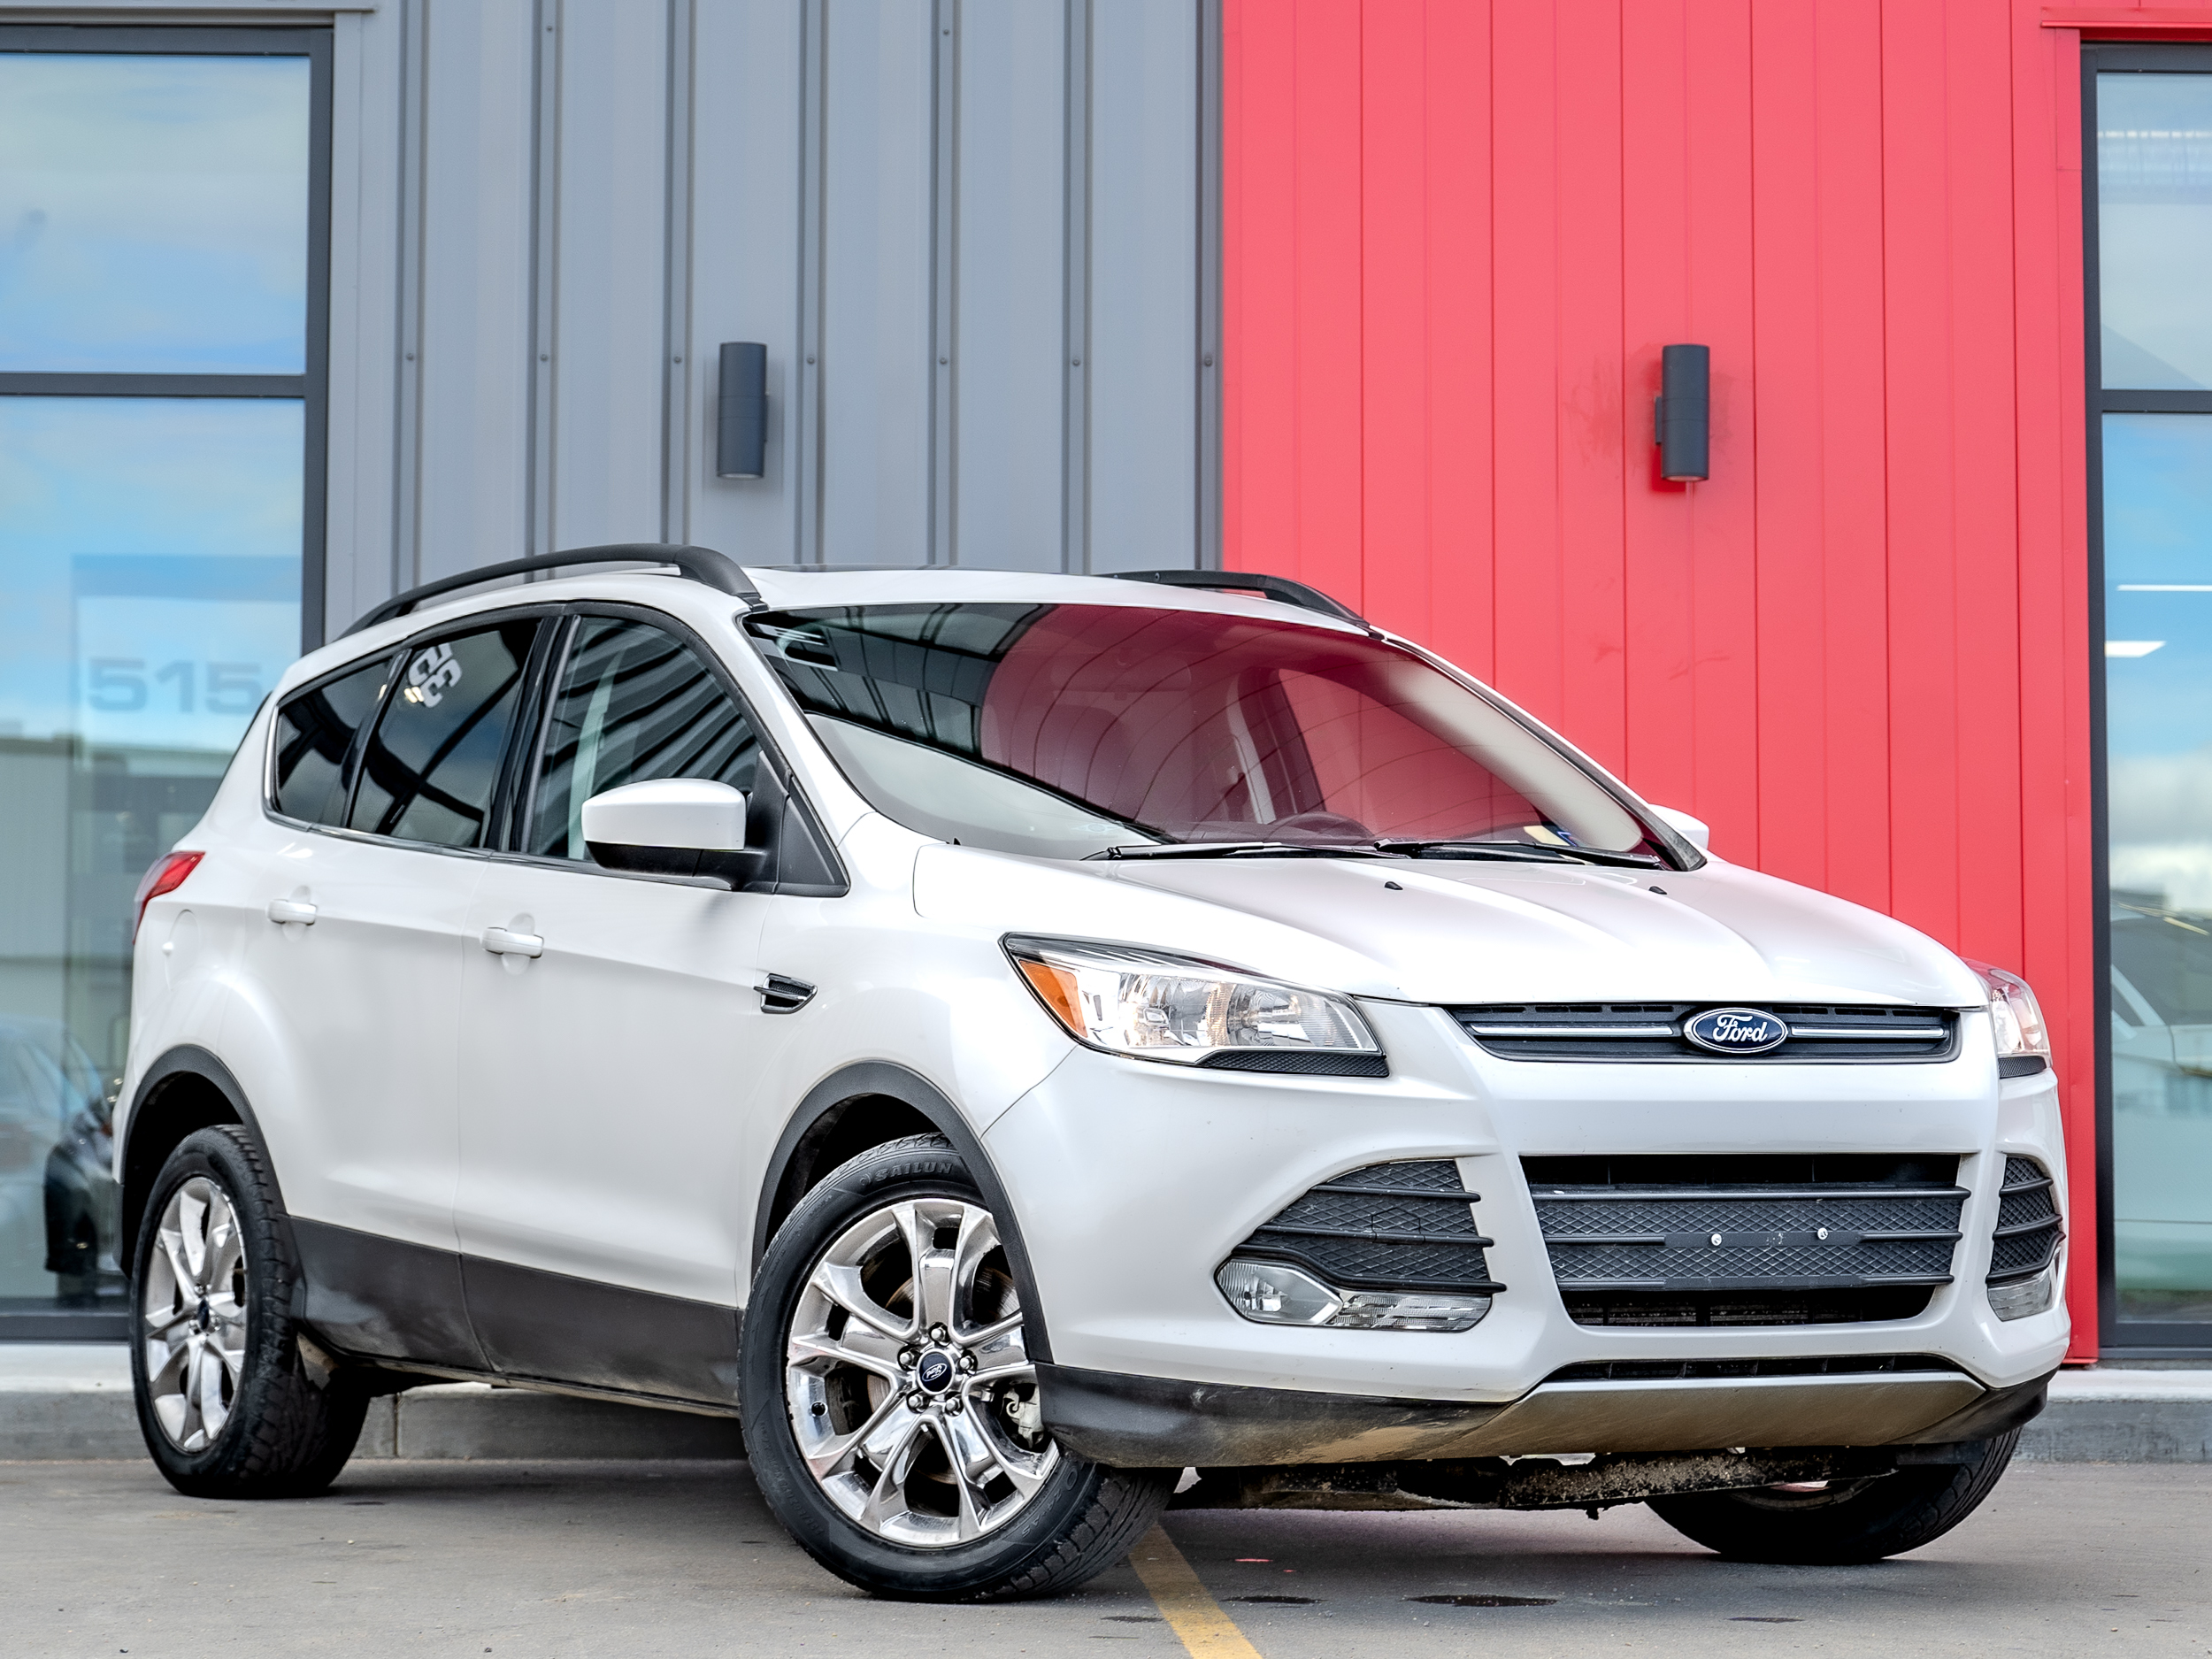 2015 Ford Escape SE - 4WD | 2.0L | SUNROOF | NO ACCIDENTS